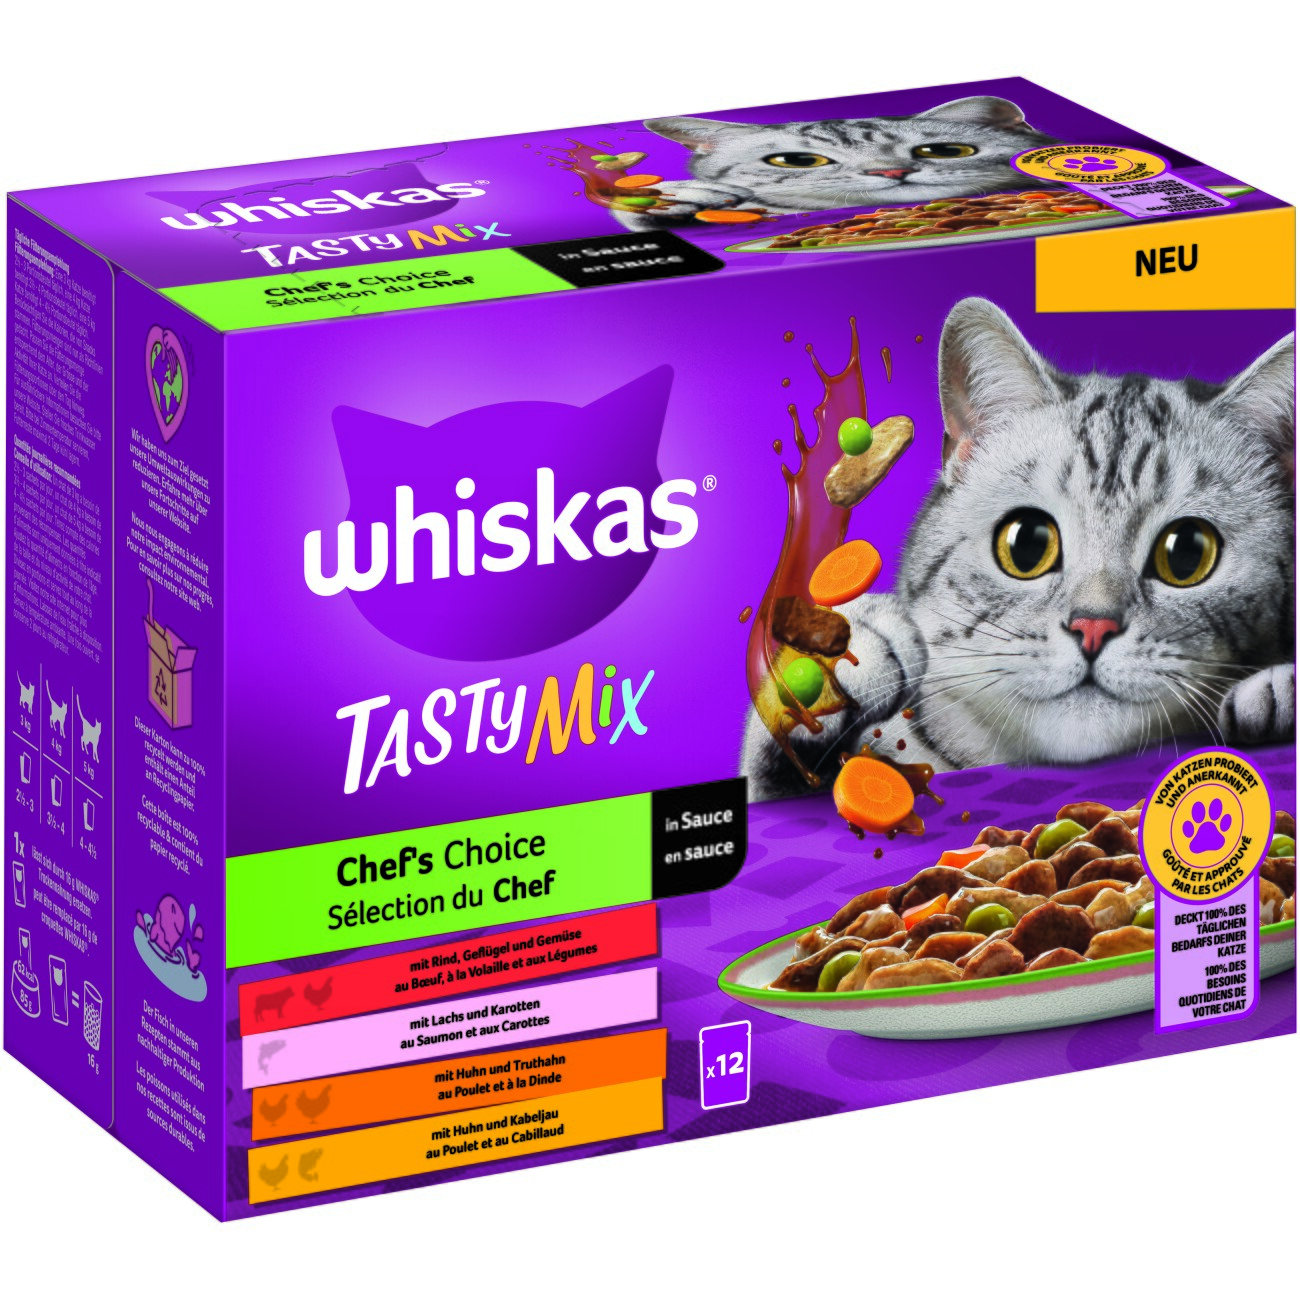 Whiskas tasty mix sachets fraîcheur recettes de campagne en sauce pour chat  adulte 4 variétés - JMT Alimentation Animale